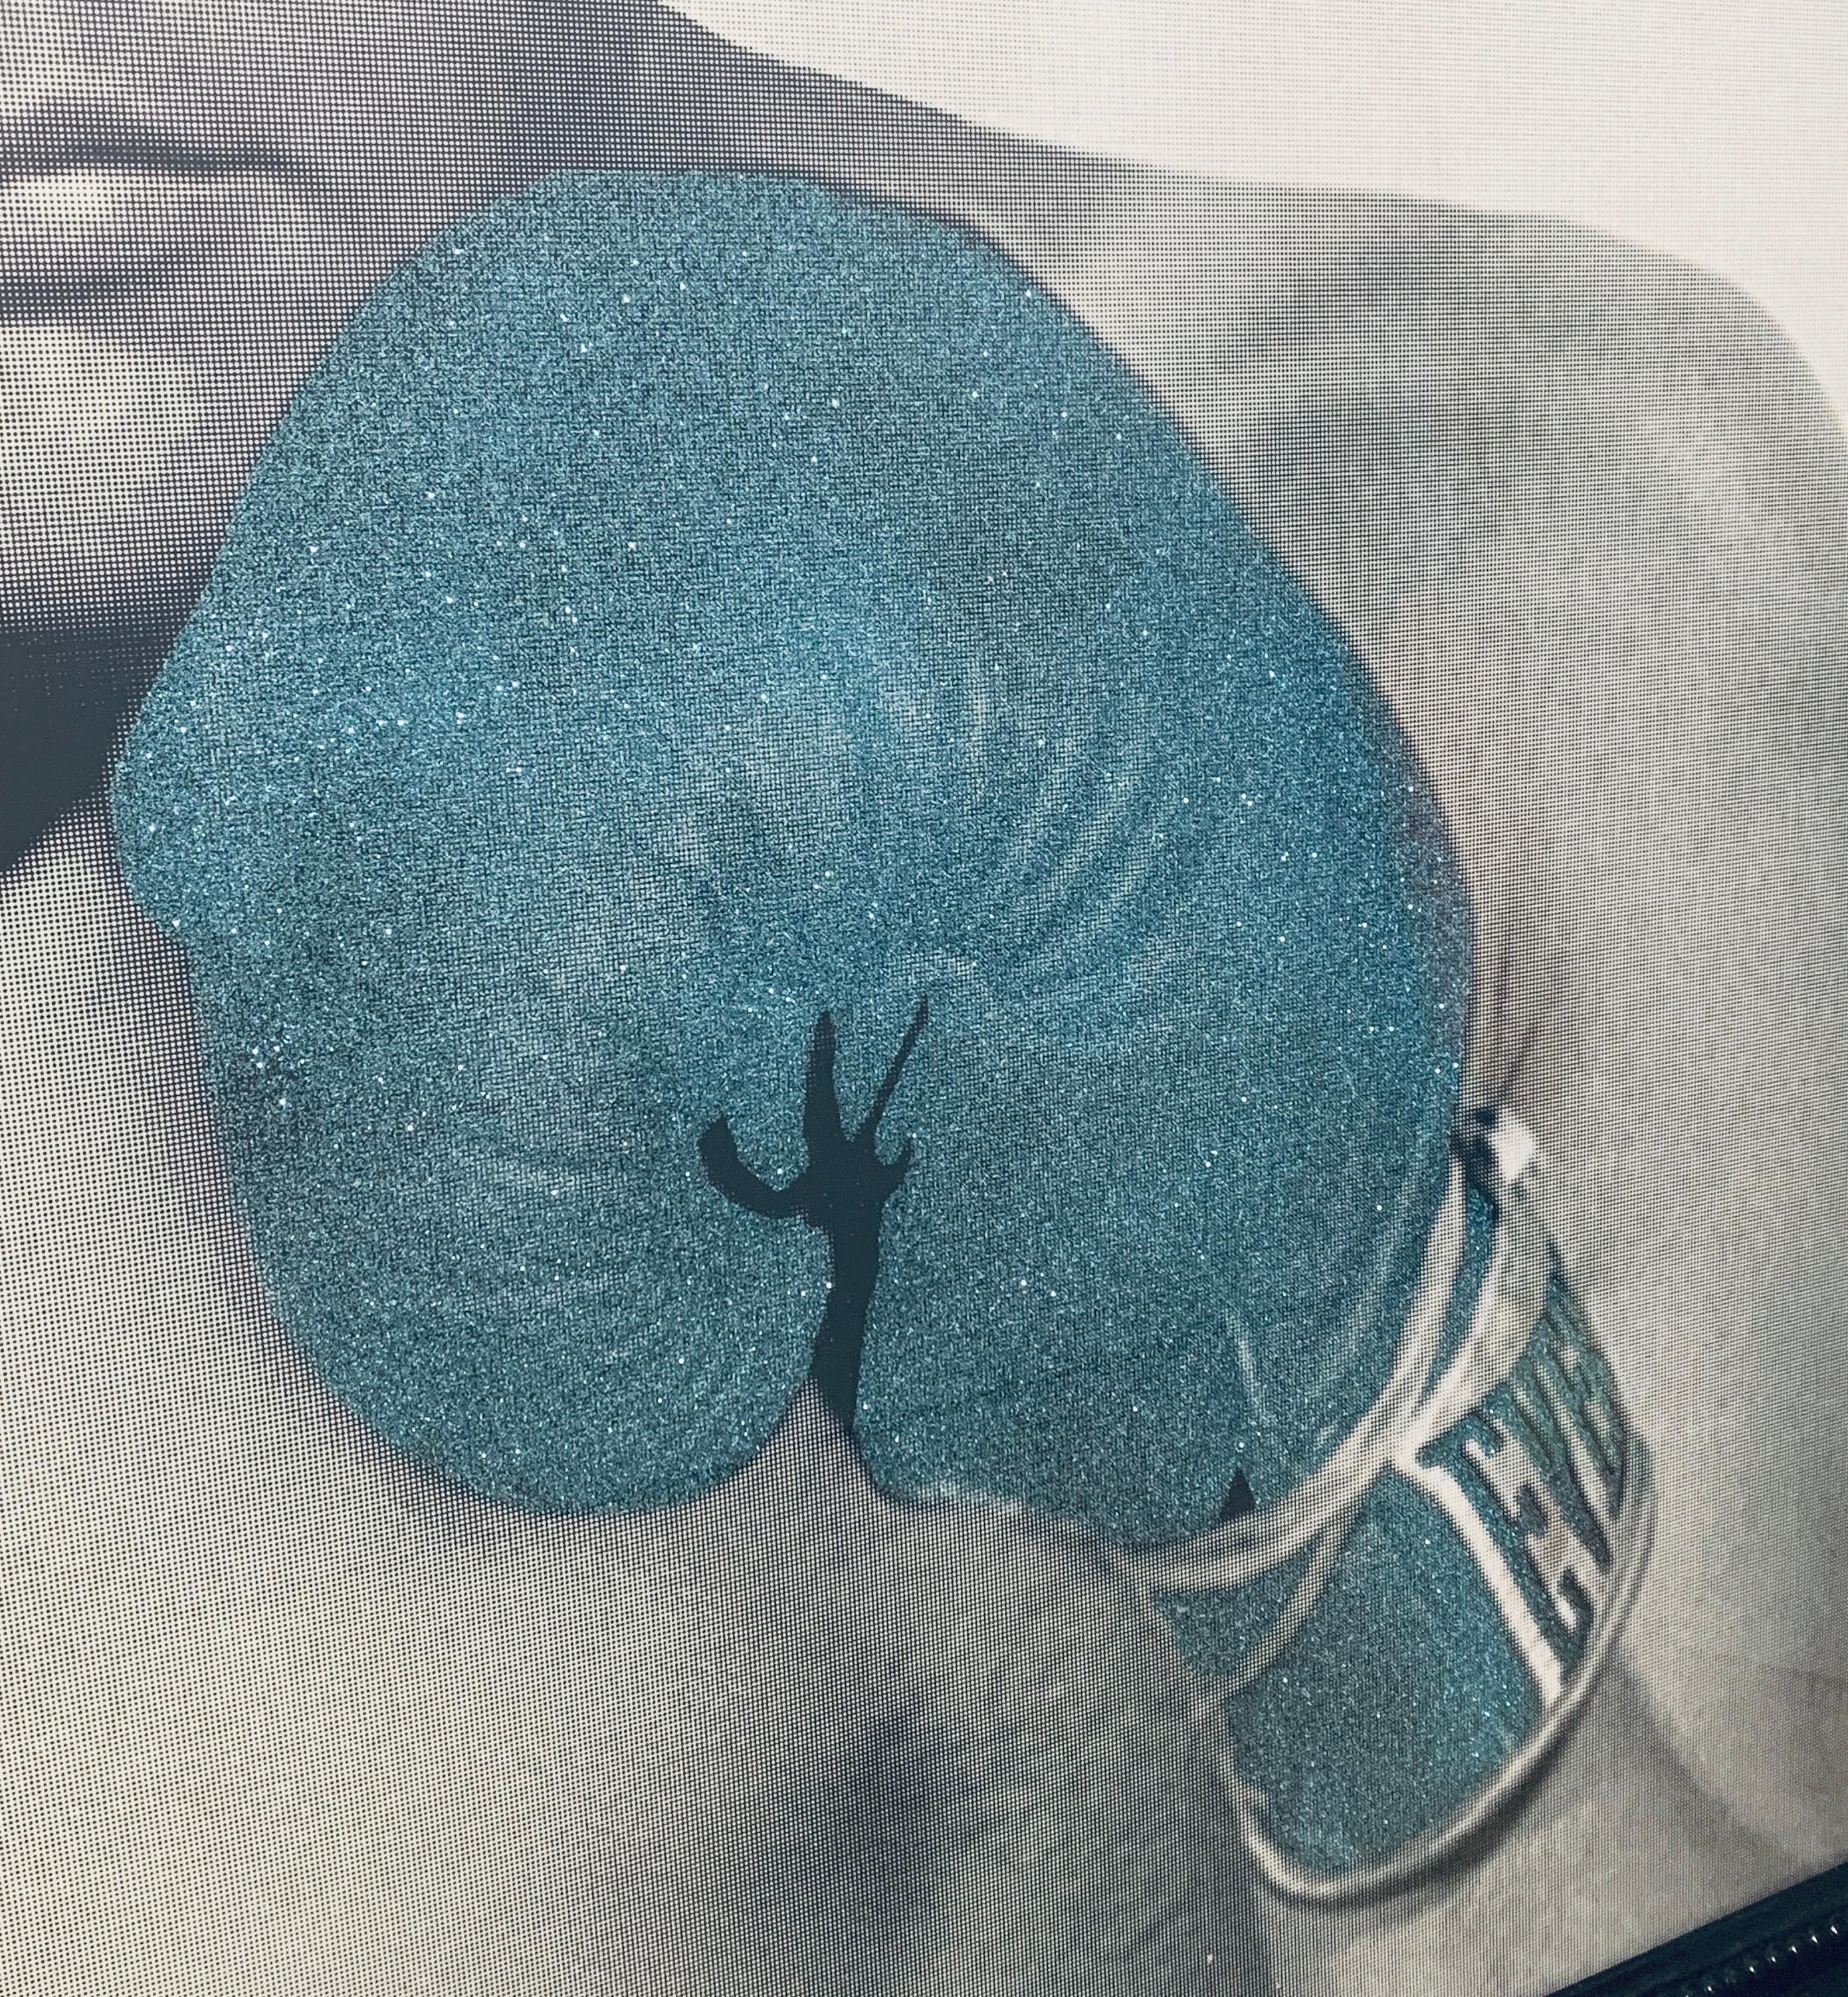 The Greatest Pink/Blue 1/10, by Julian Prolman Elvis Mohammed Ali Boxing Glitter For Sale 7